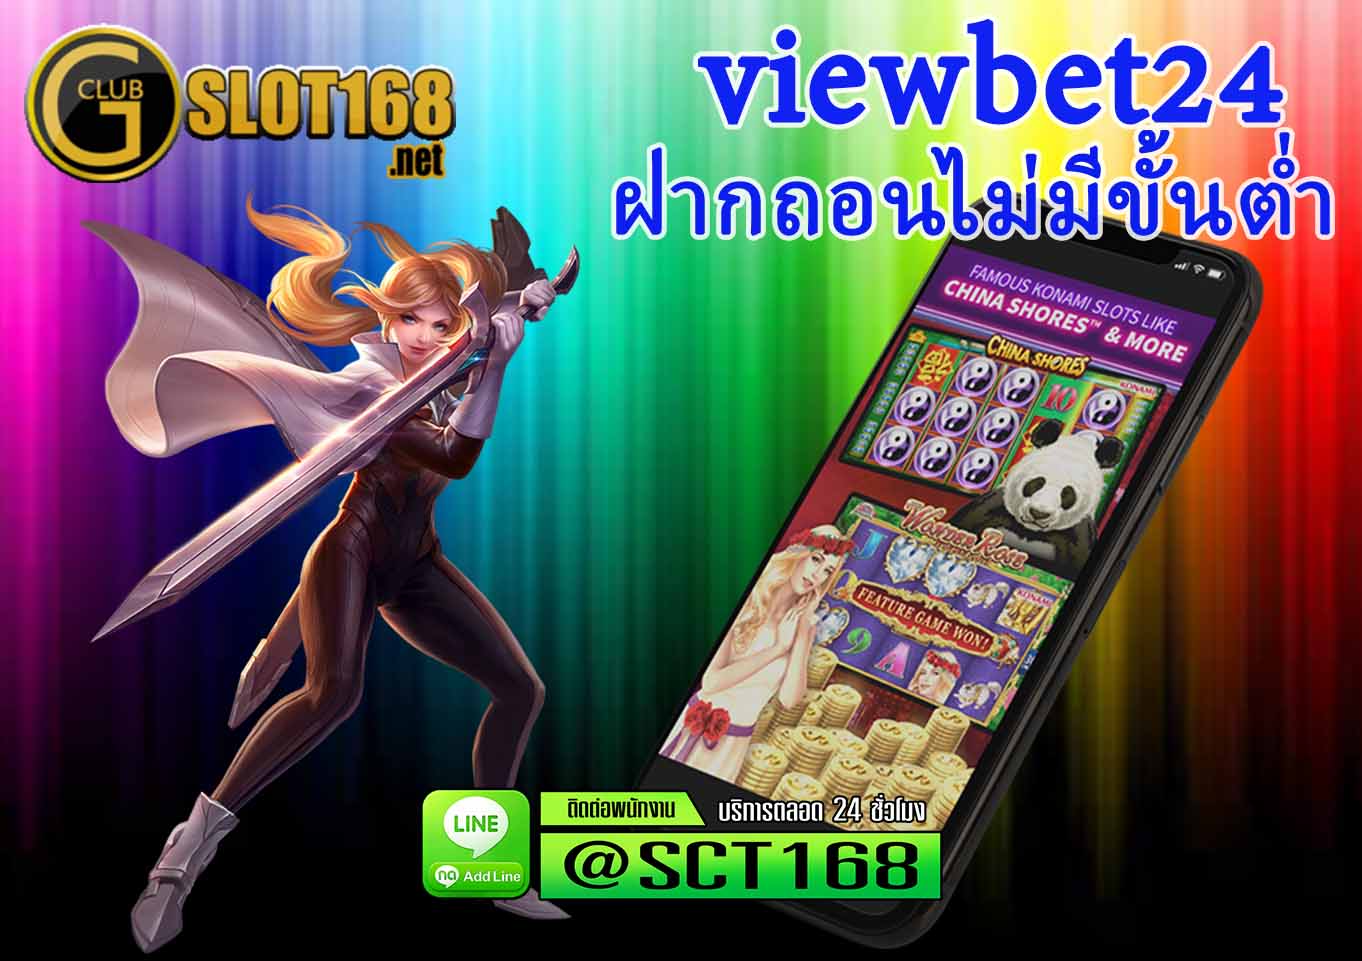 Viewbet24 Thailand